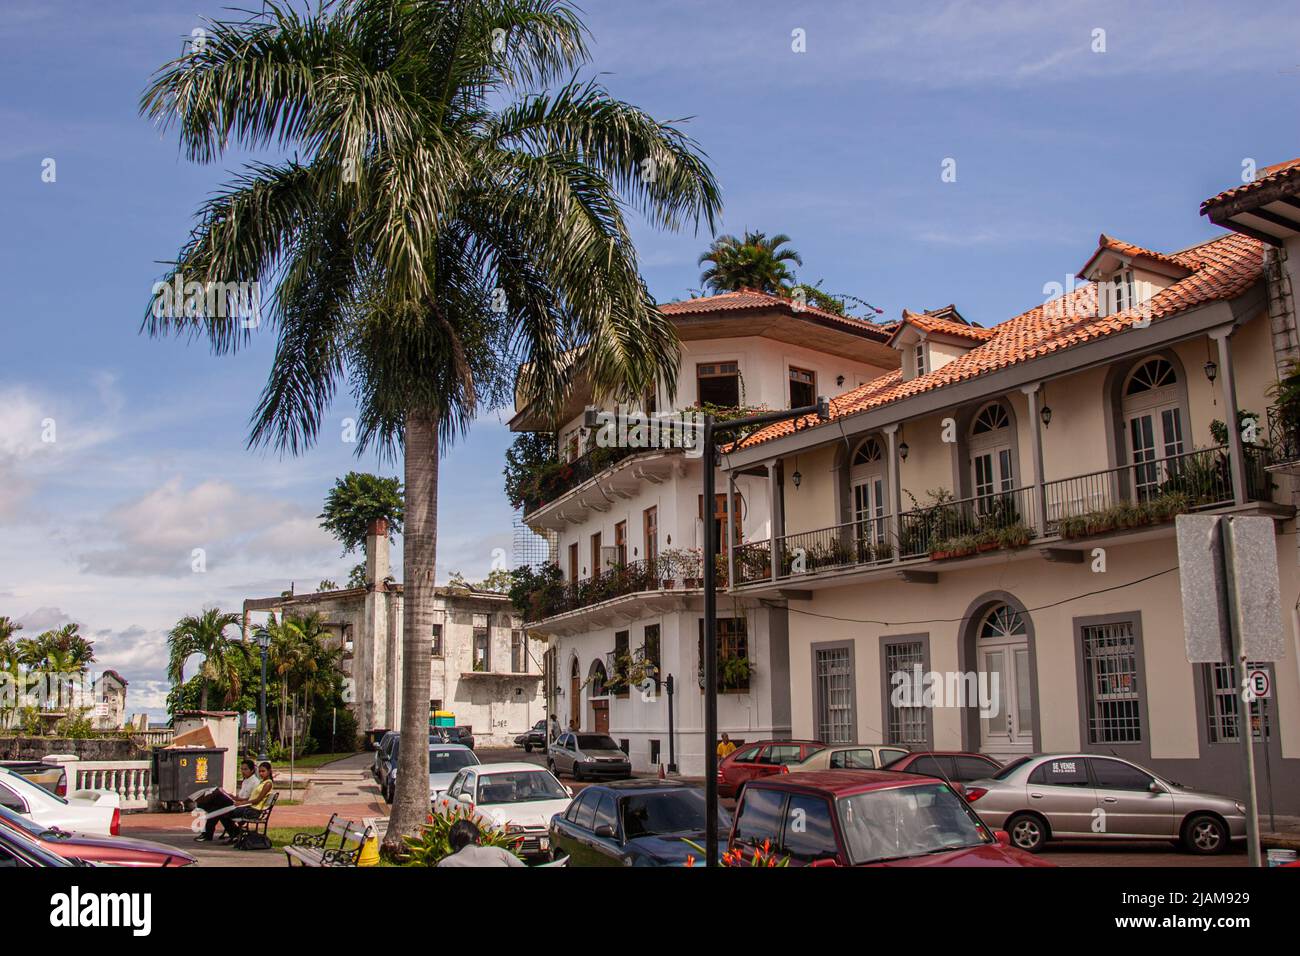 Panama City Street in the Old City, Casco Viejo, Panama, Stock Photo